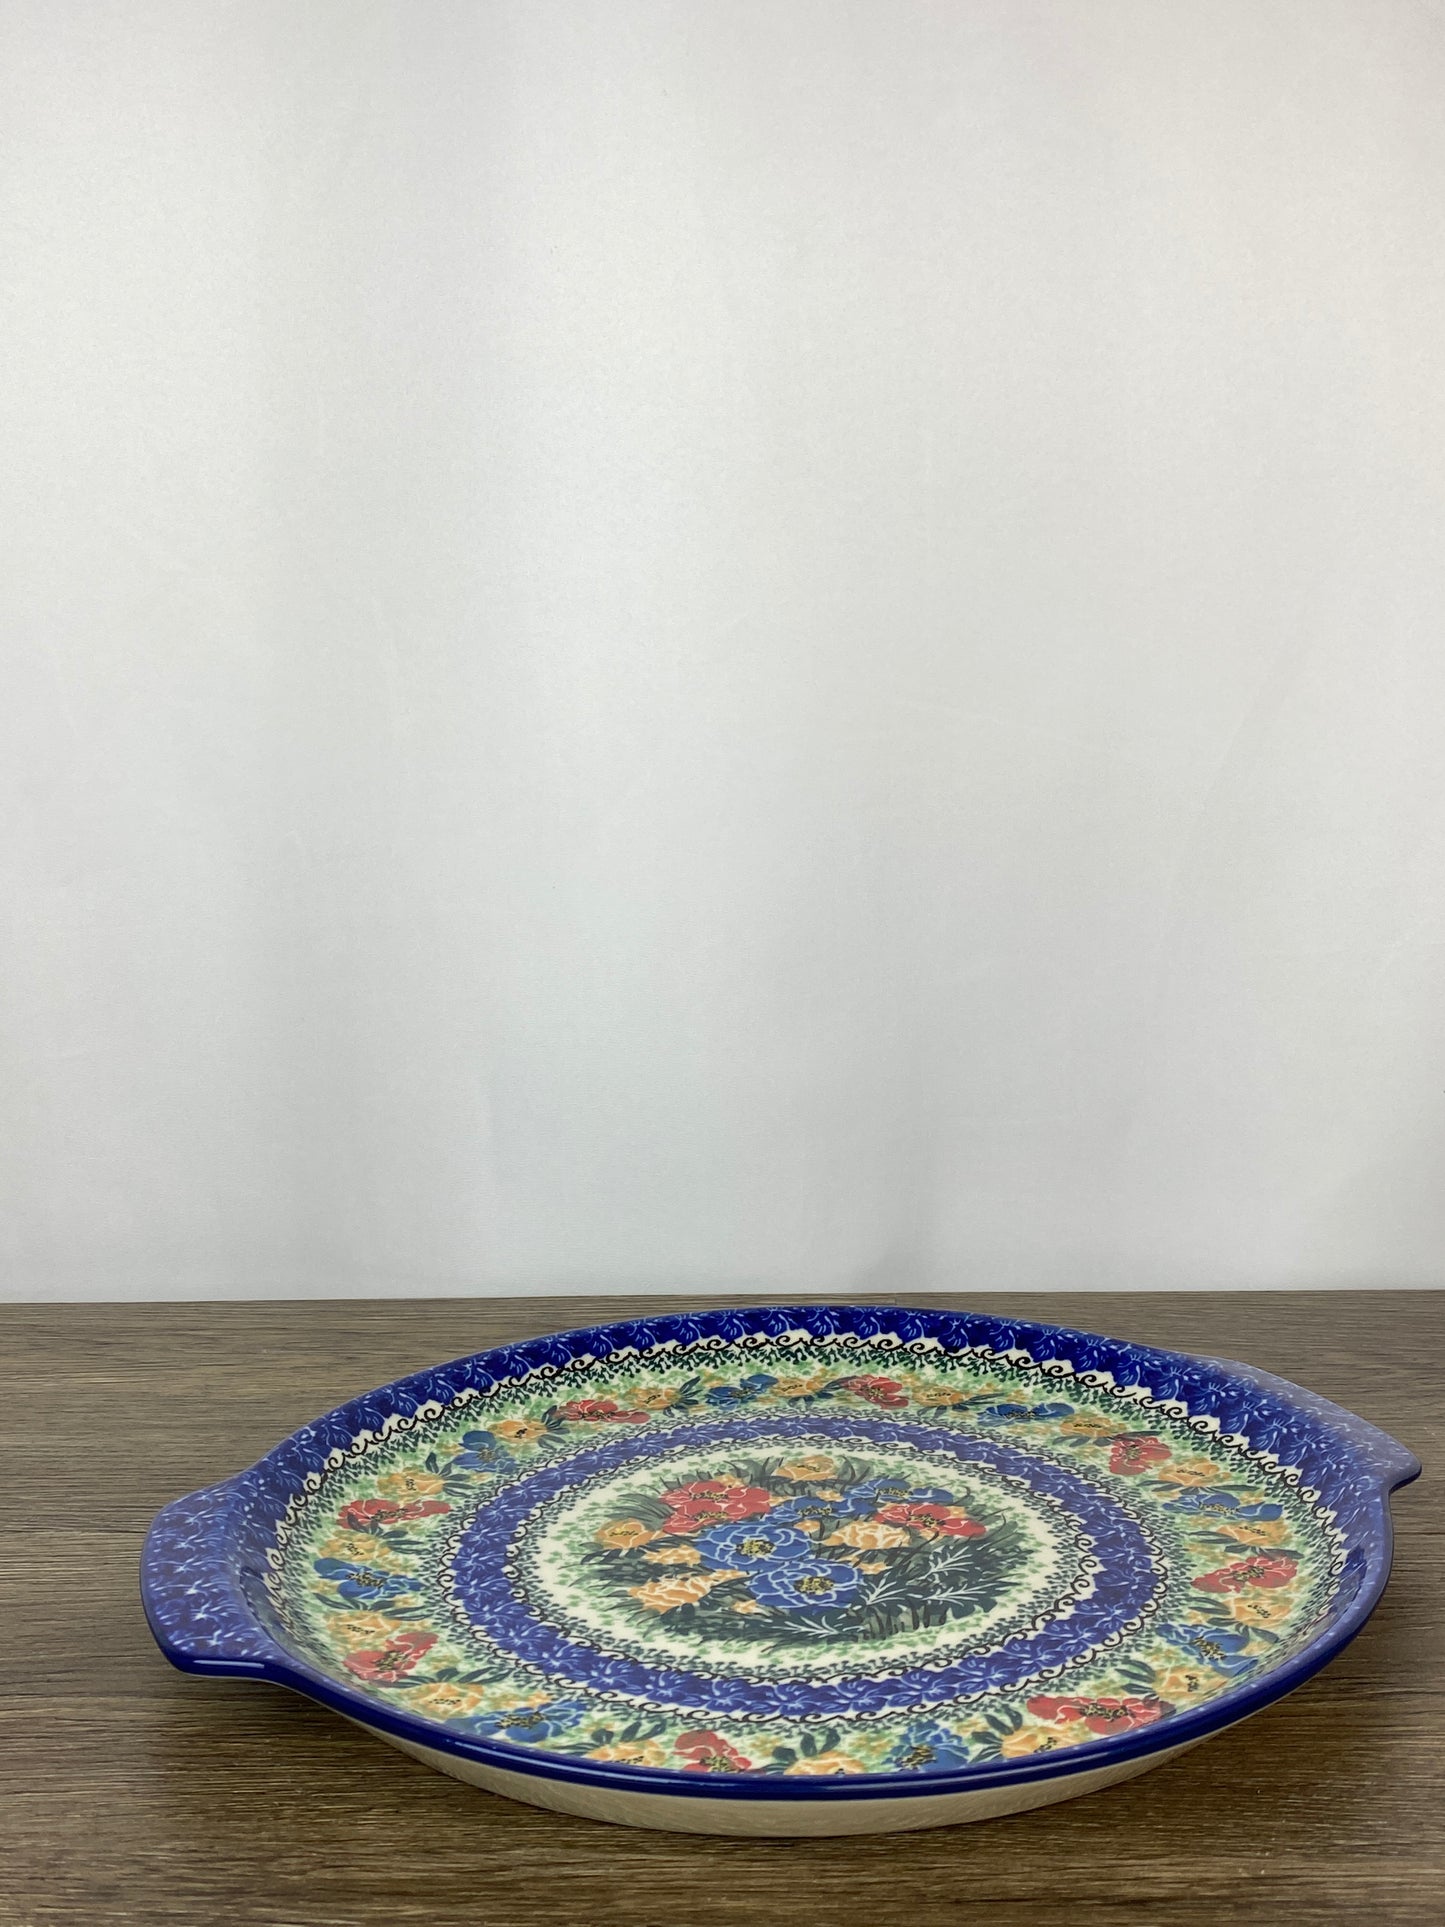 Round Unikat Platter With Handles / Pizza Stone - Shape 151 - Pattern U3553